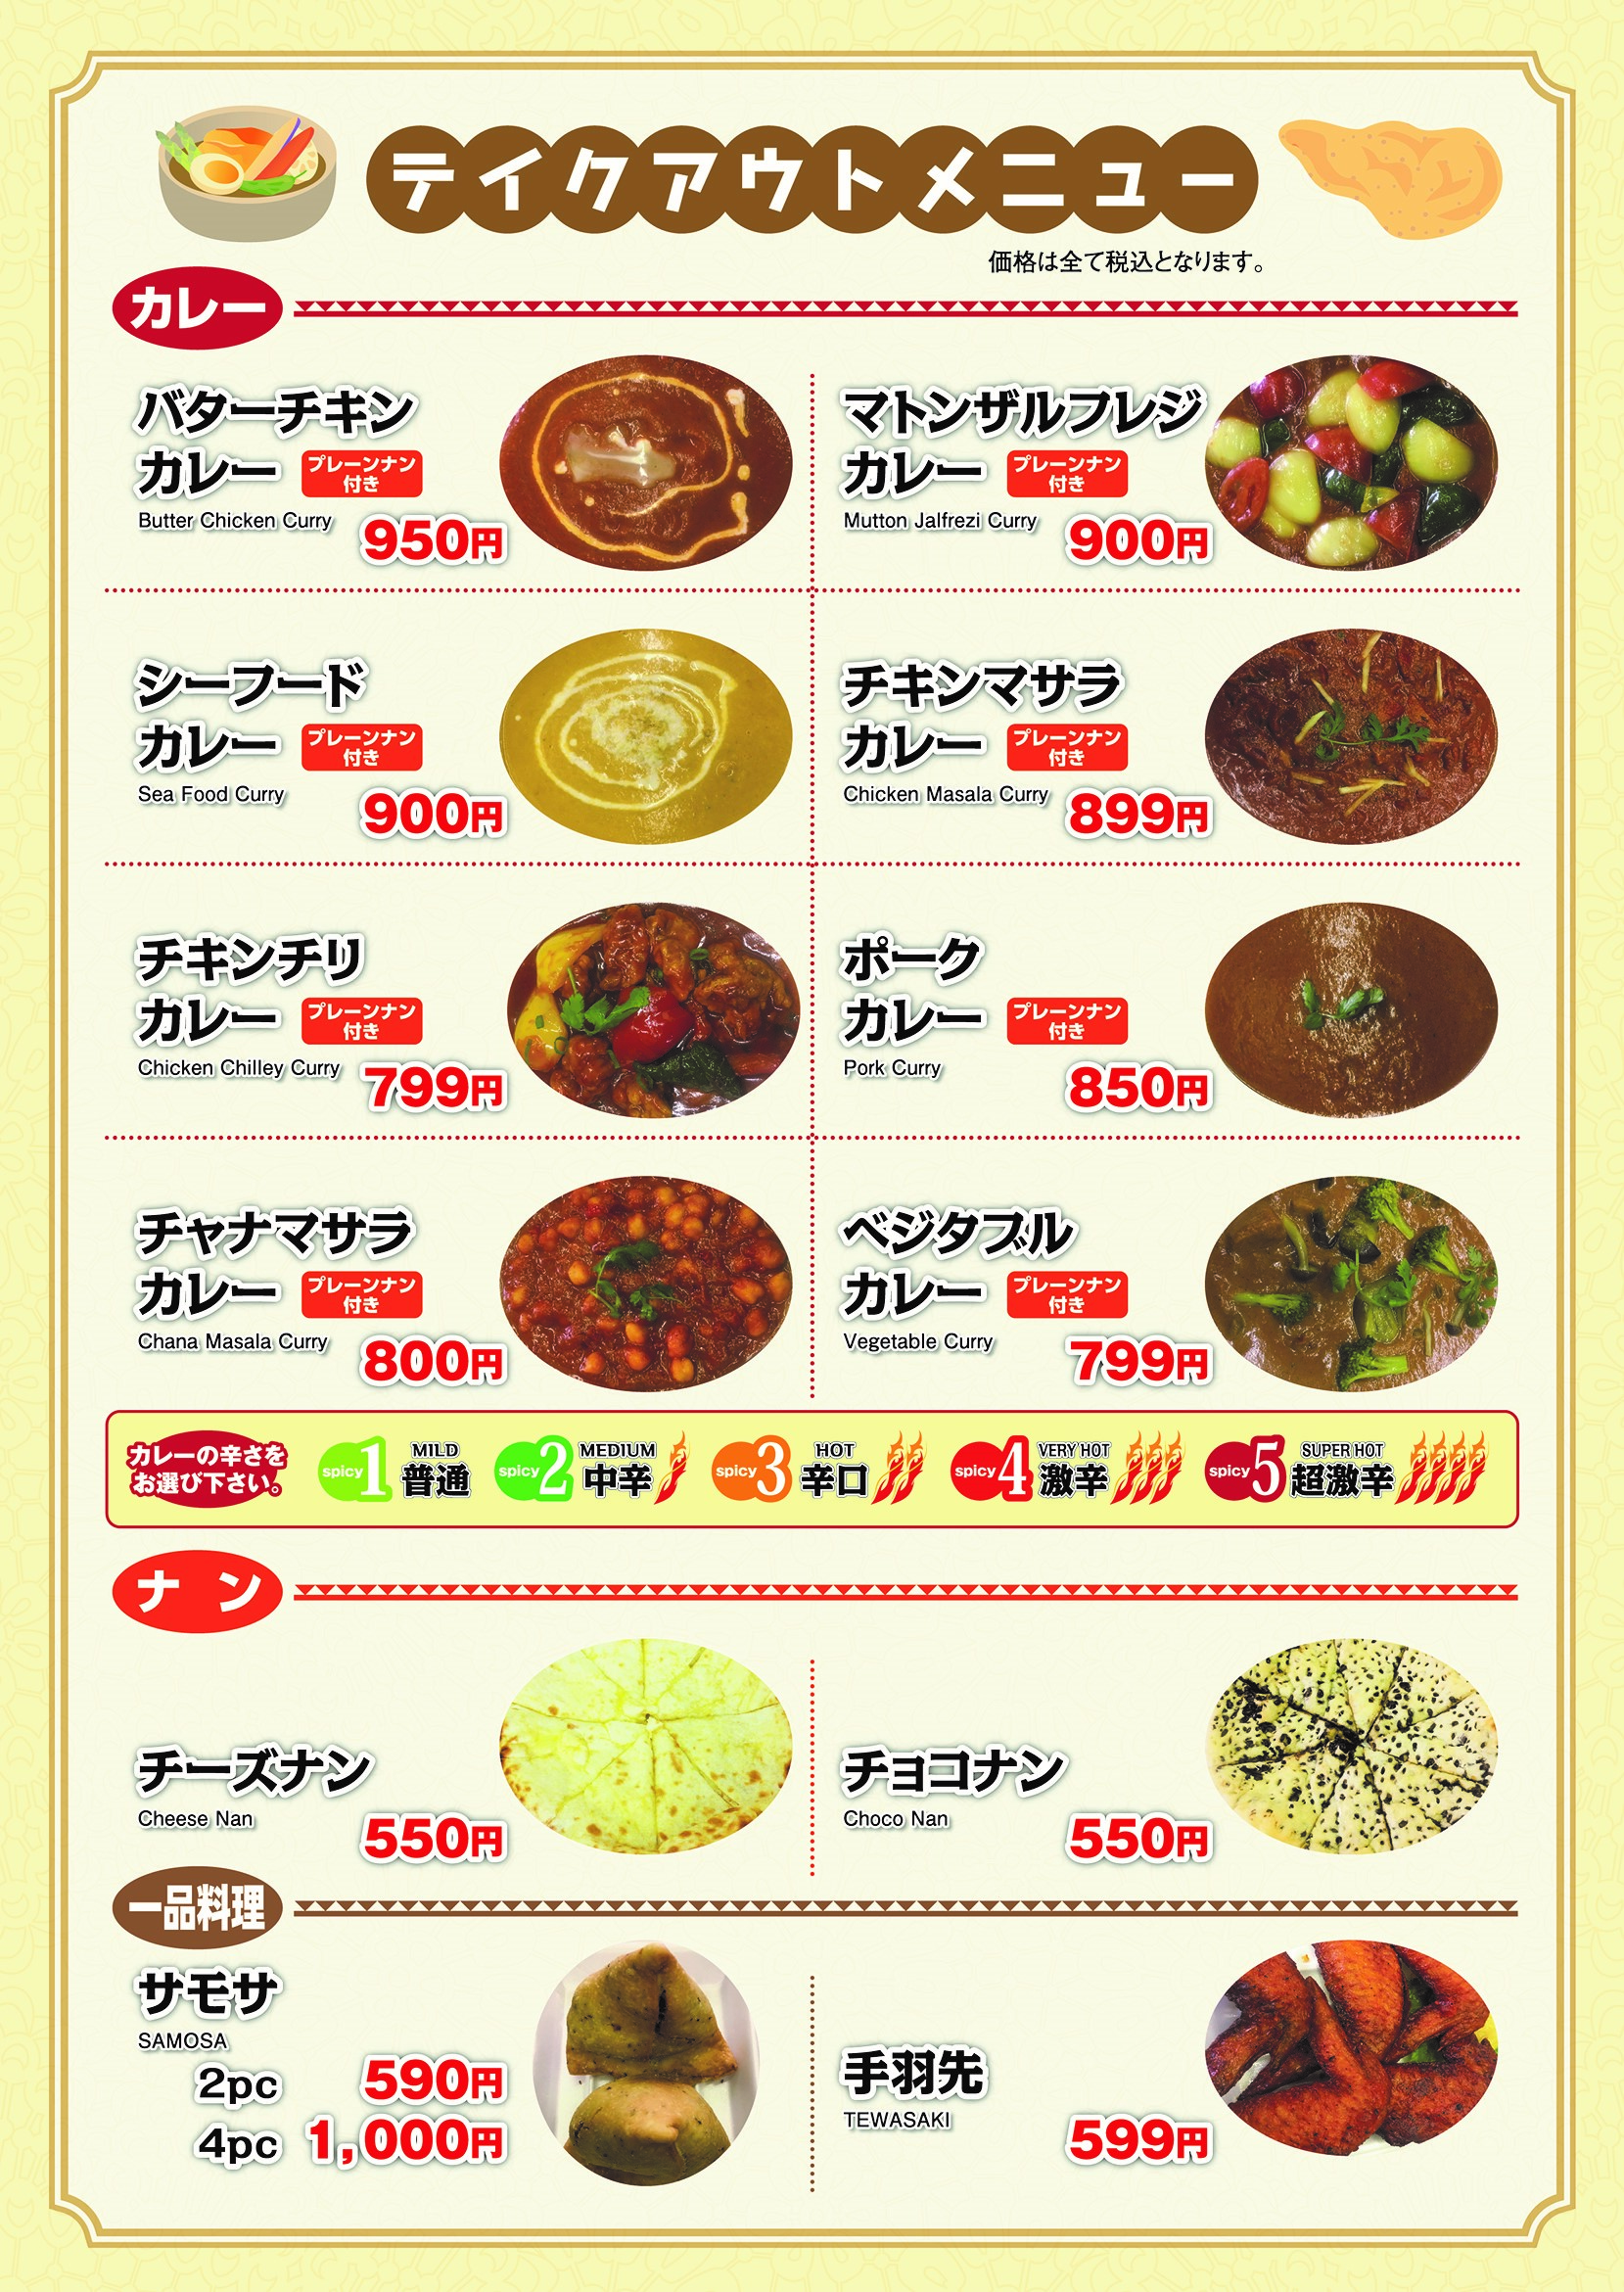 take-out menu1